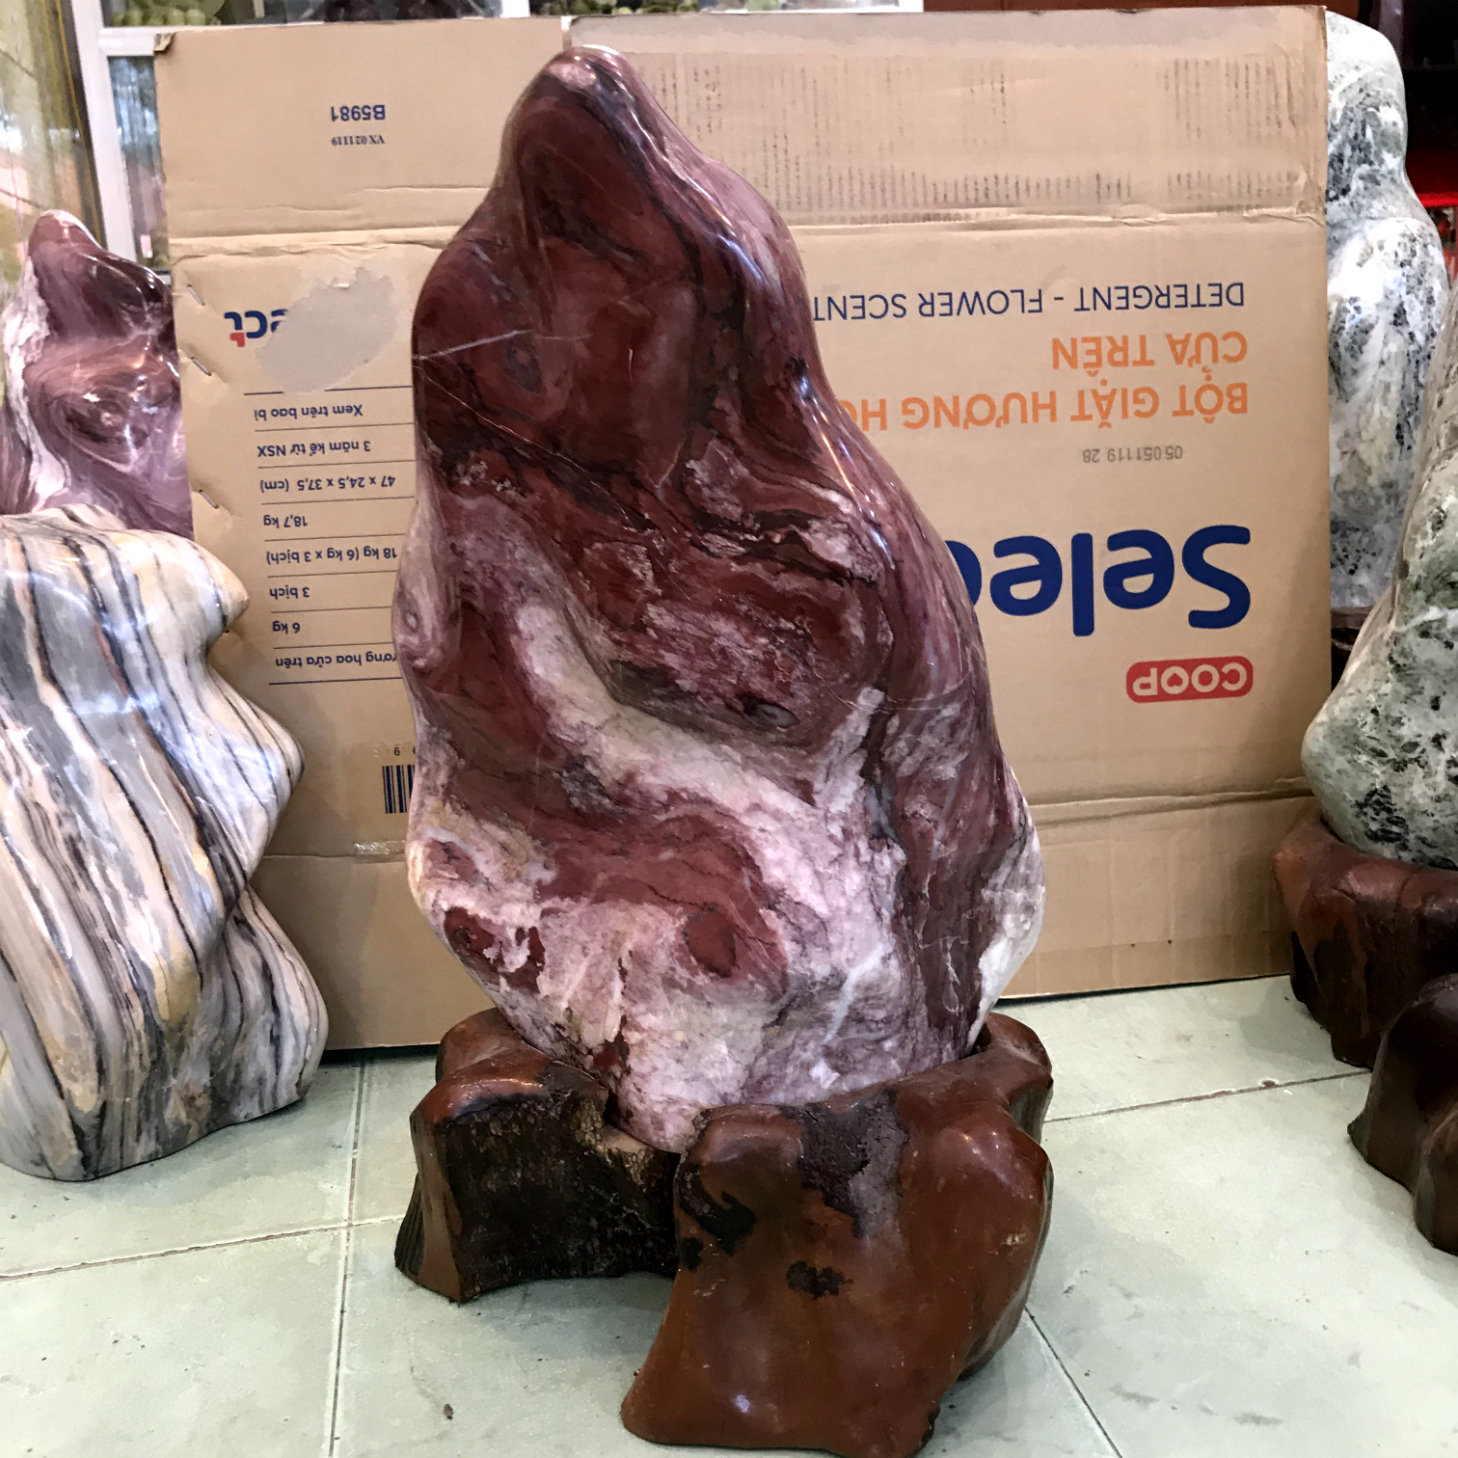 Trụ đá cây đá tự nhiên màu đỏ, đá trấn trạch màu đỏ chất canxite cho người mệnh Thổ và Hỏa cao 53 cm nặng 25 kg D.Cao53X32X25